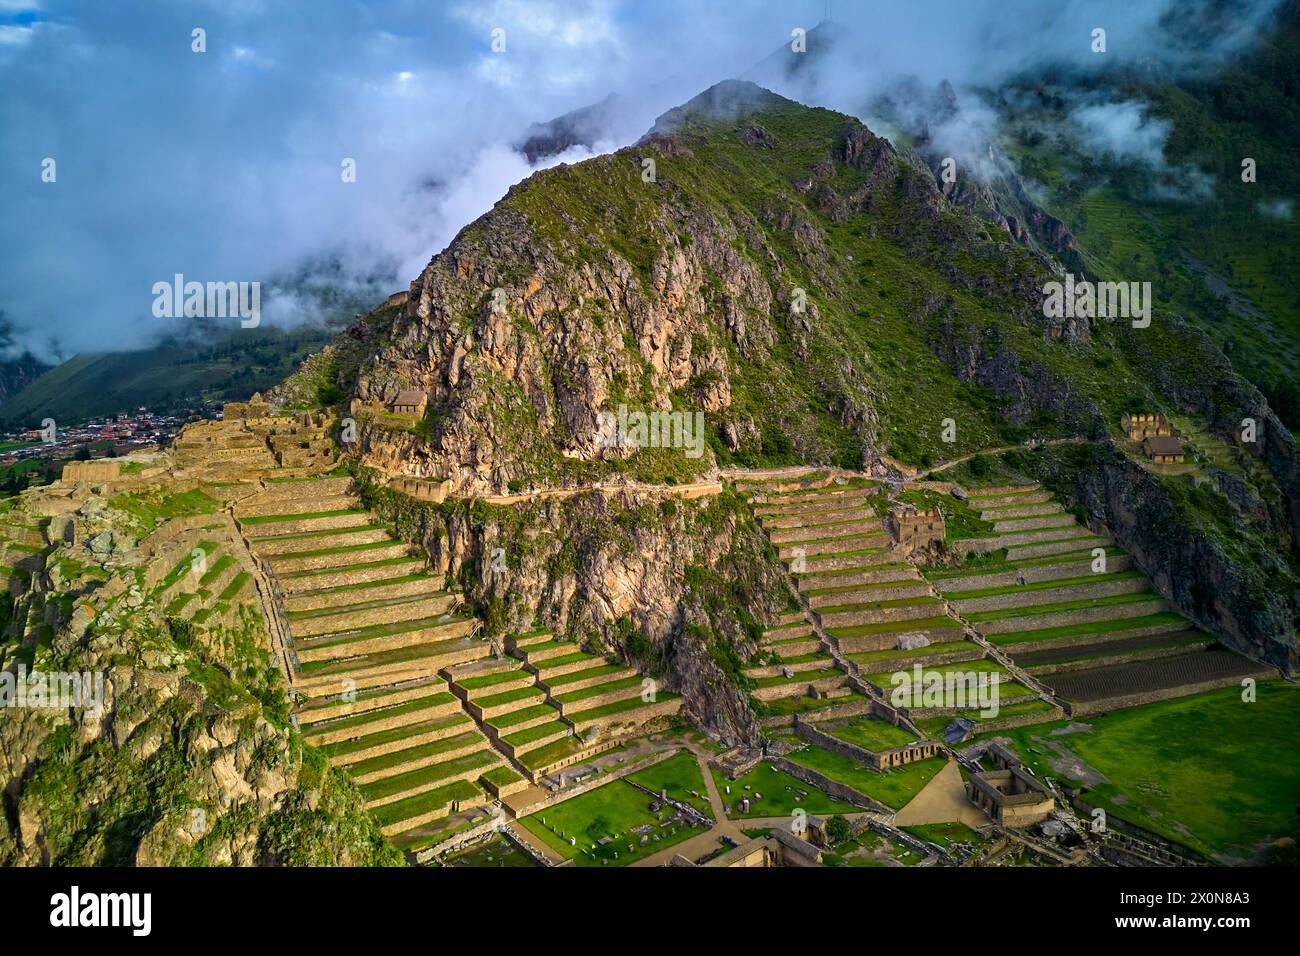 Pérou, province de Cuzco, la vallée sacrée des Incas, Ollantaytambo, le site archéologique inca d'Ollantaytambo Banque D'Images